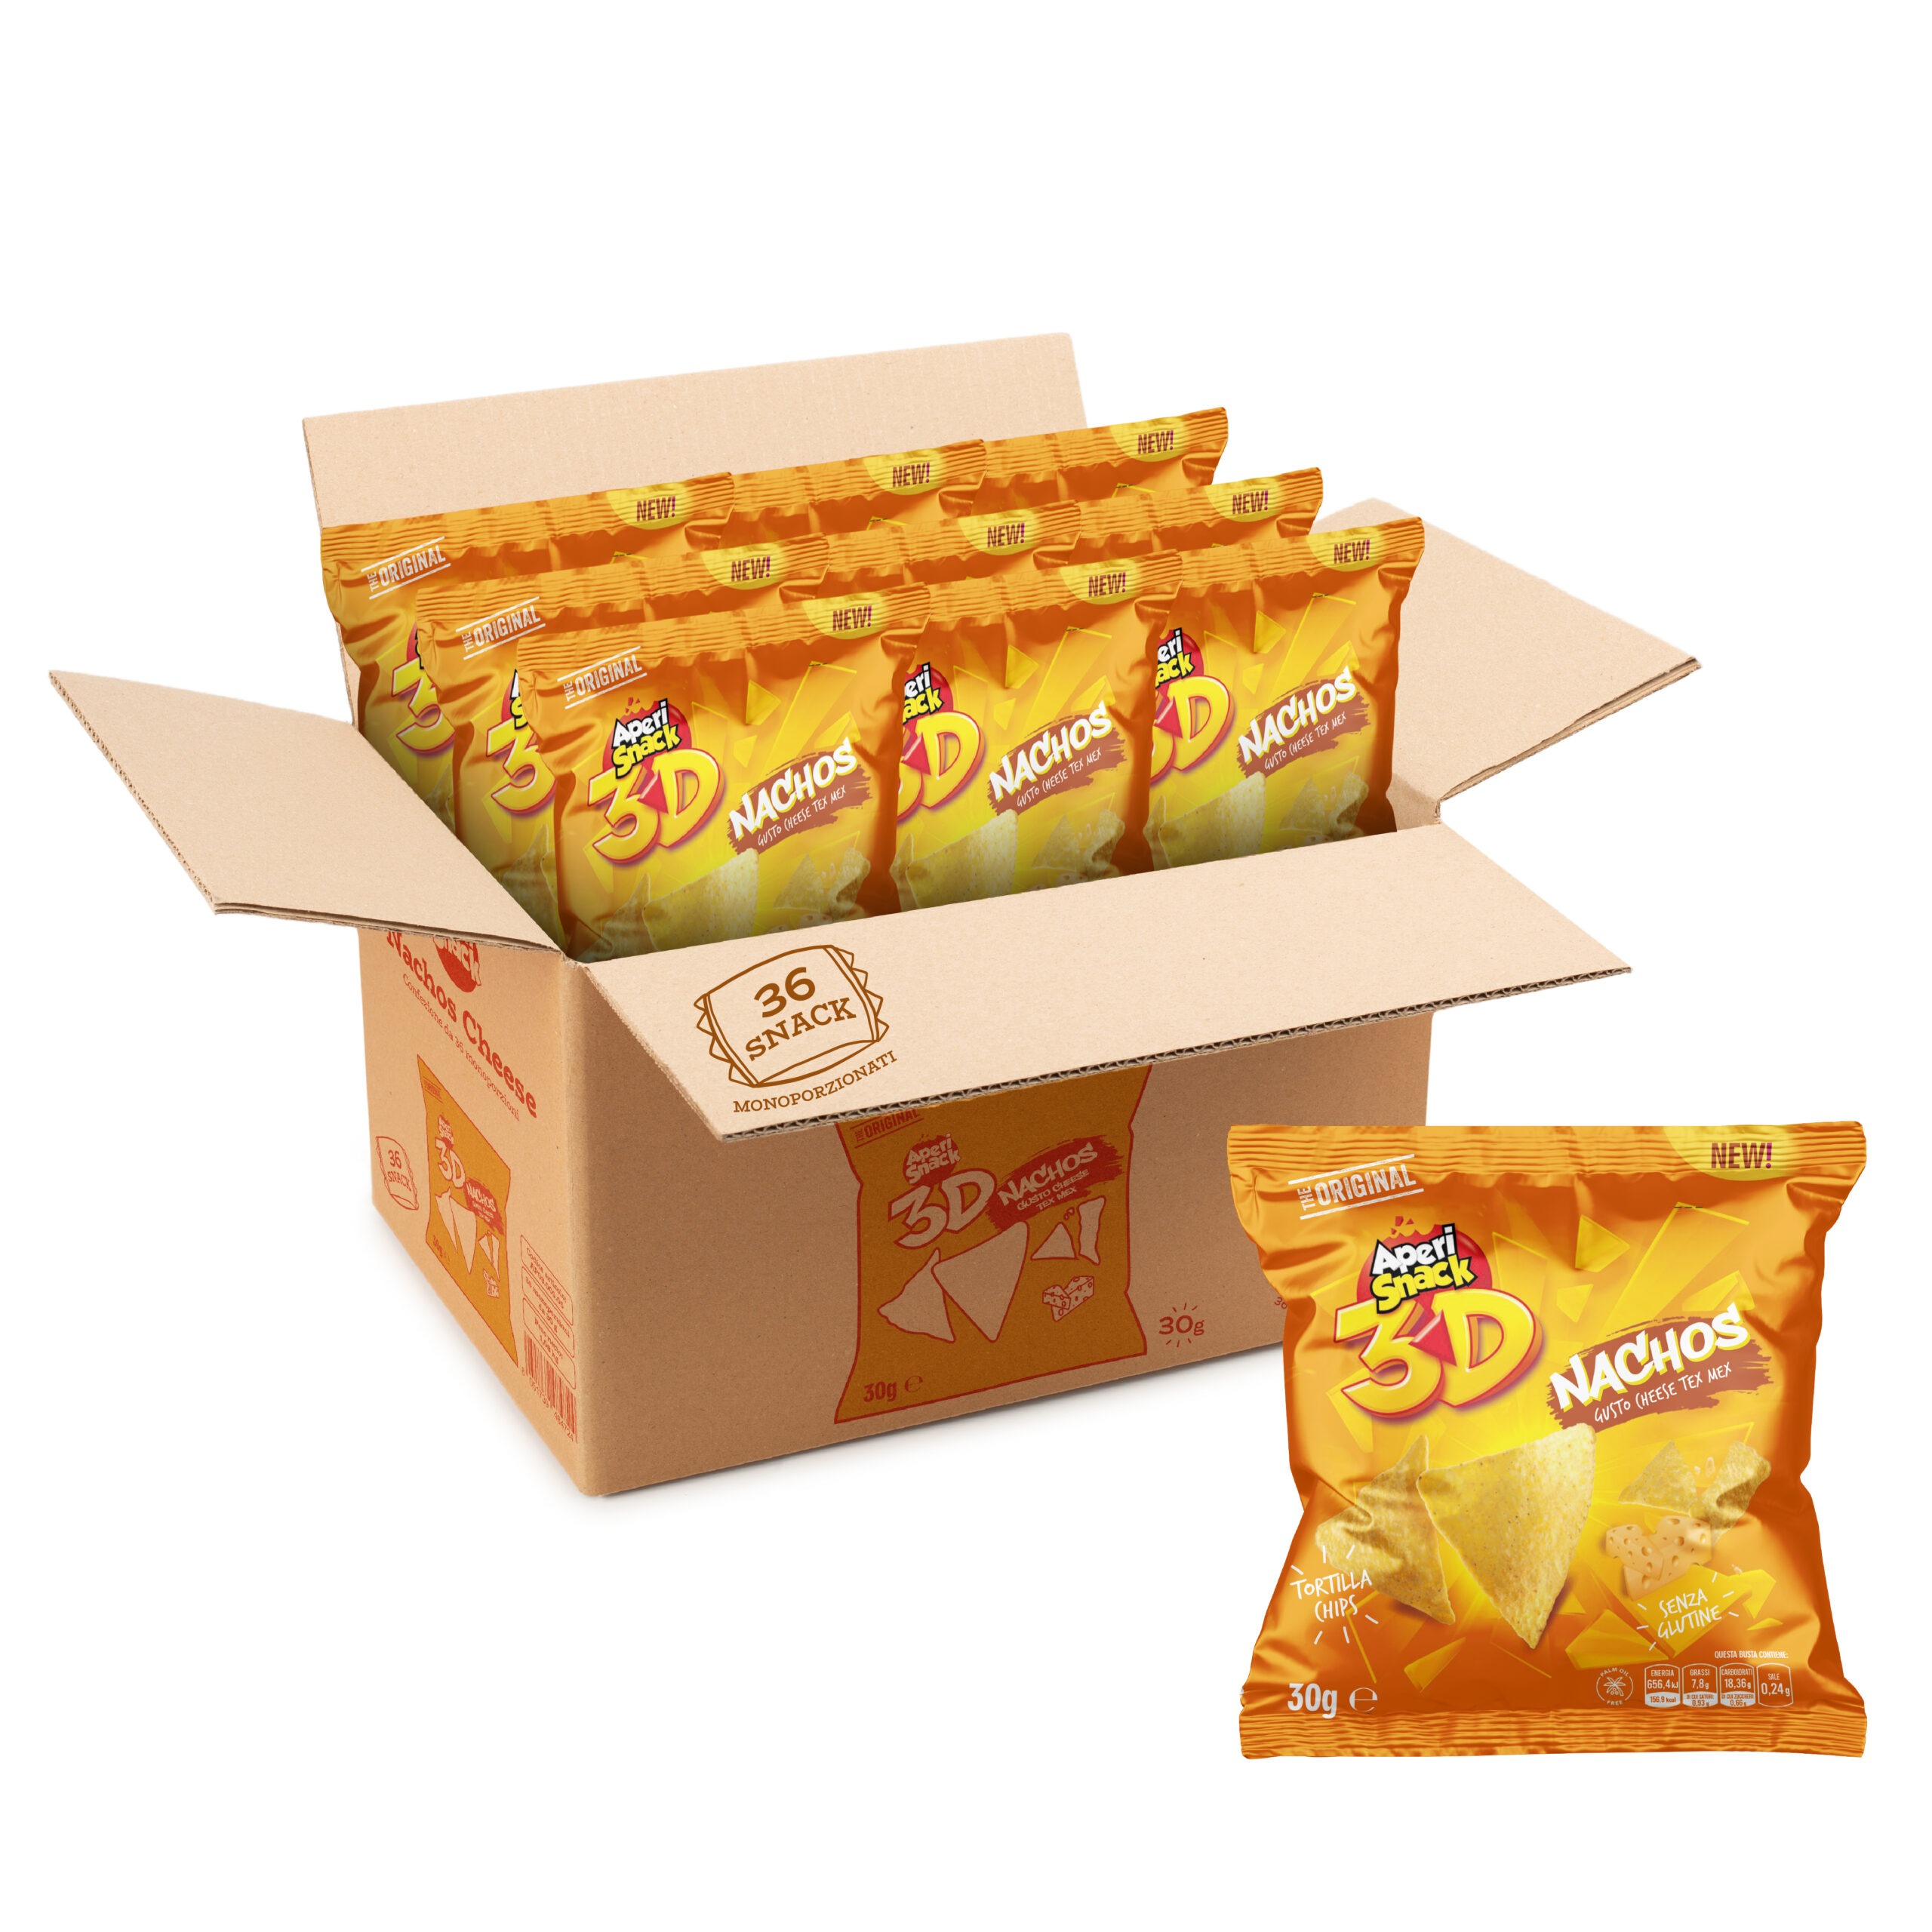 Nachos Cheese box